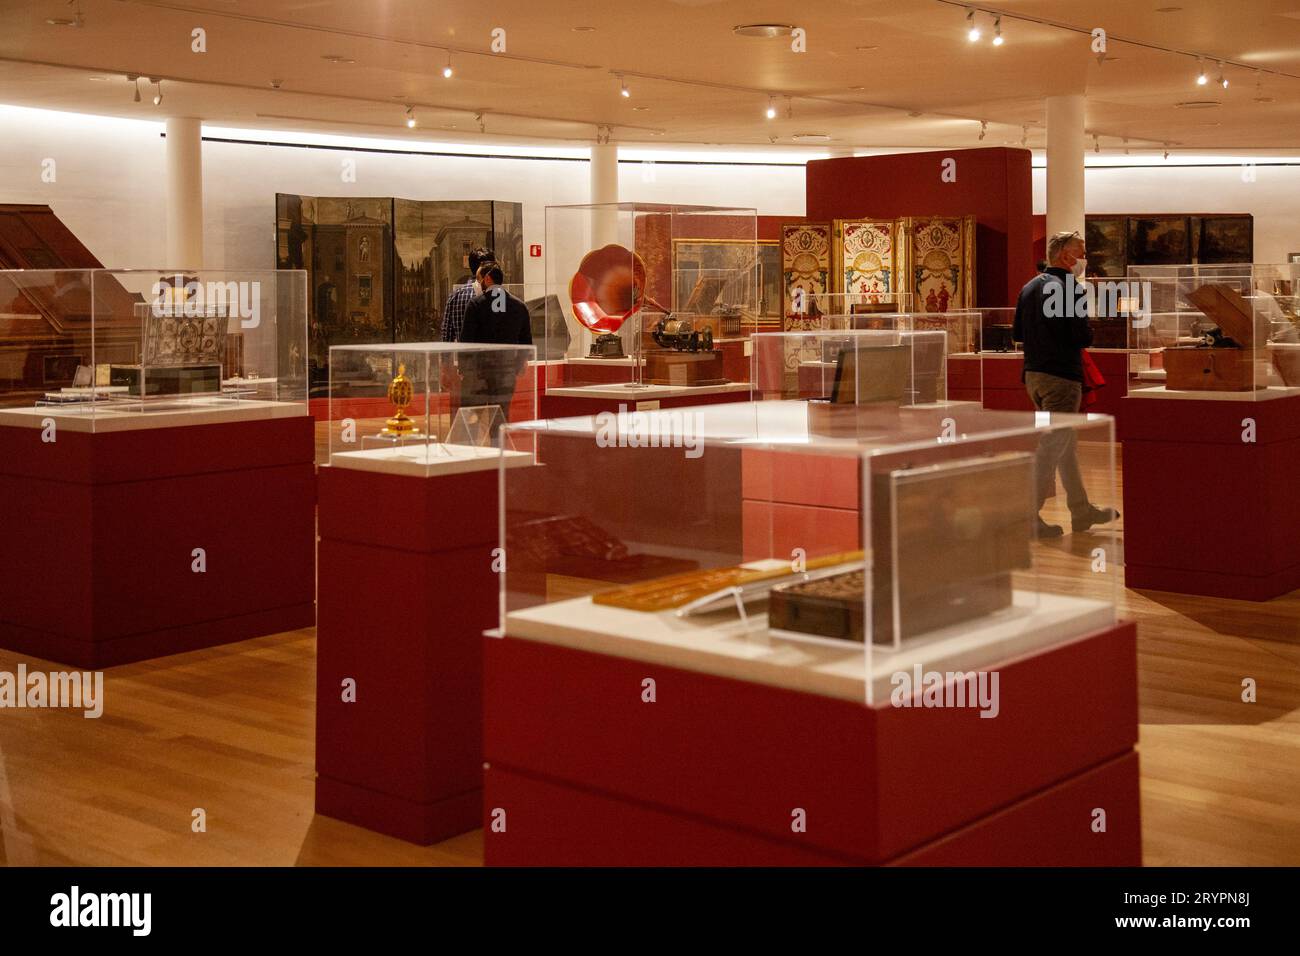 Salle d'objets de collection exposée au Museo Soumaya - Mexico, Mexique Banque D'Images